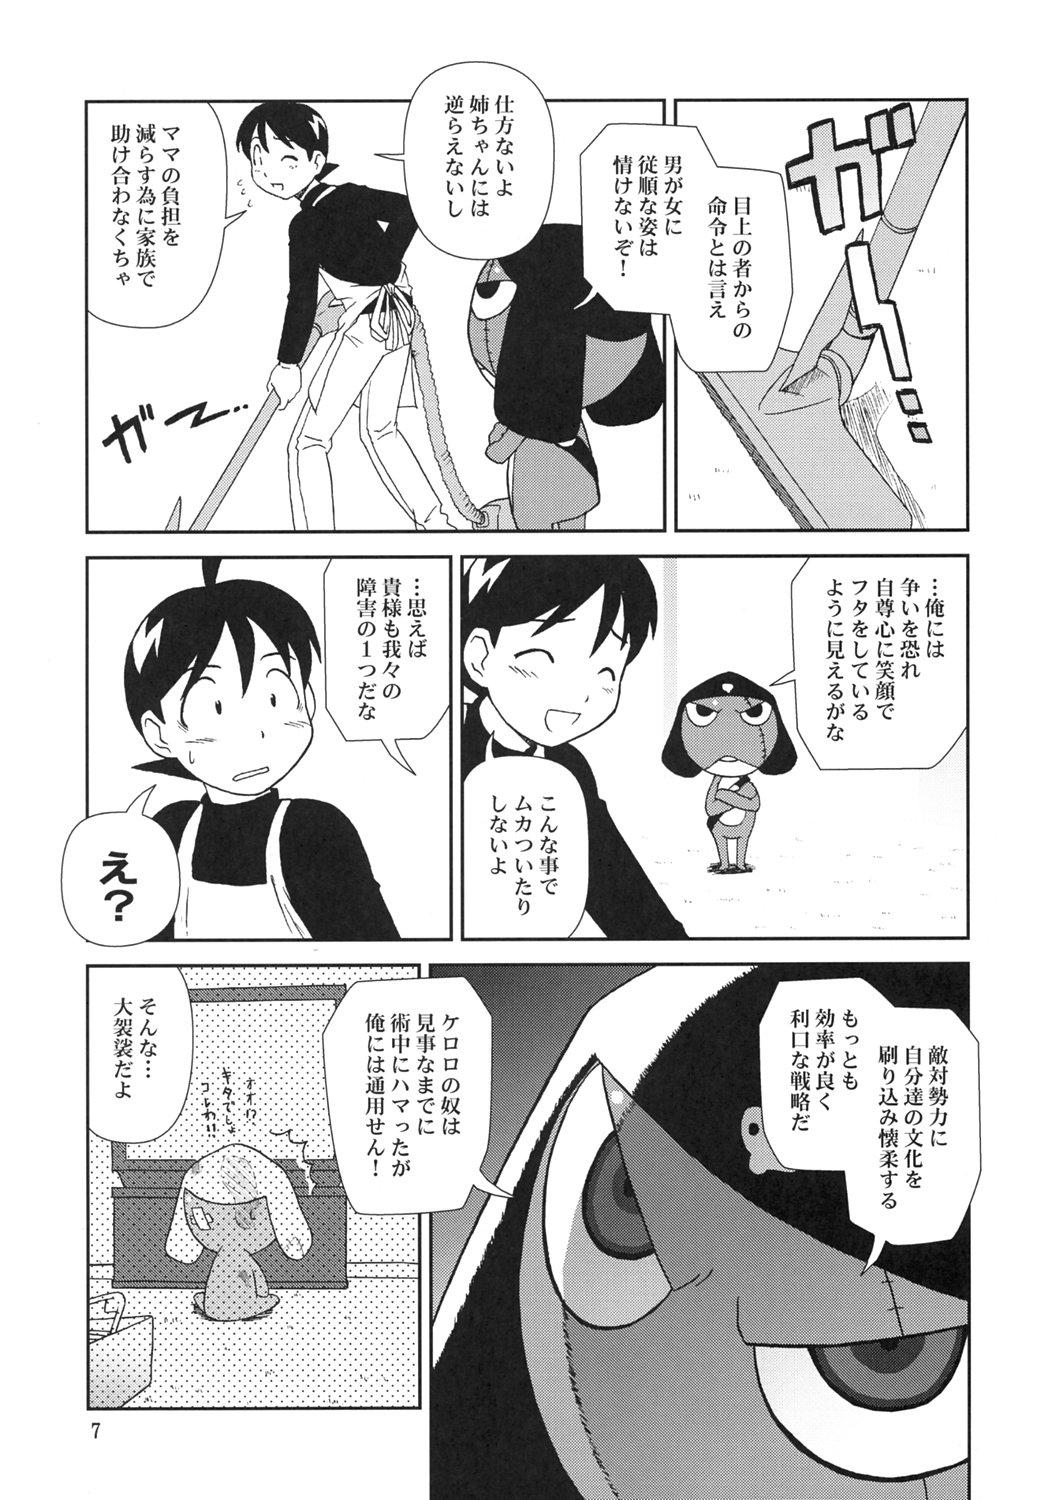 Chica Kokoro ga Mondai - Keroro gunsou Pain - Page 6